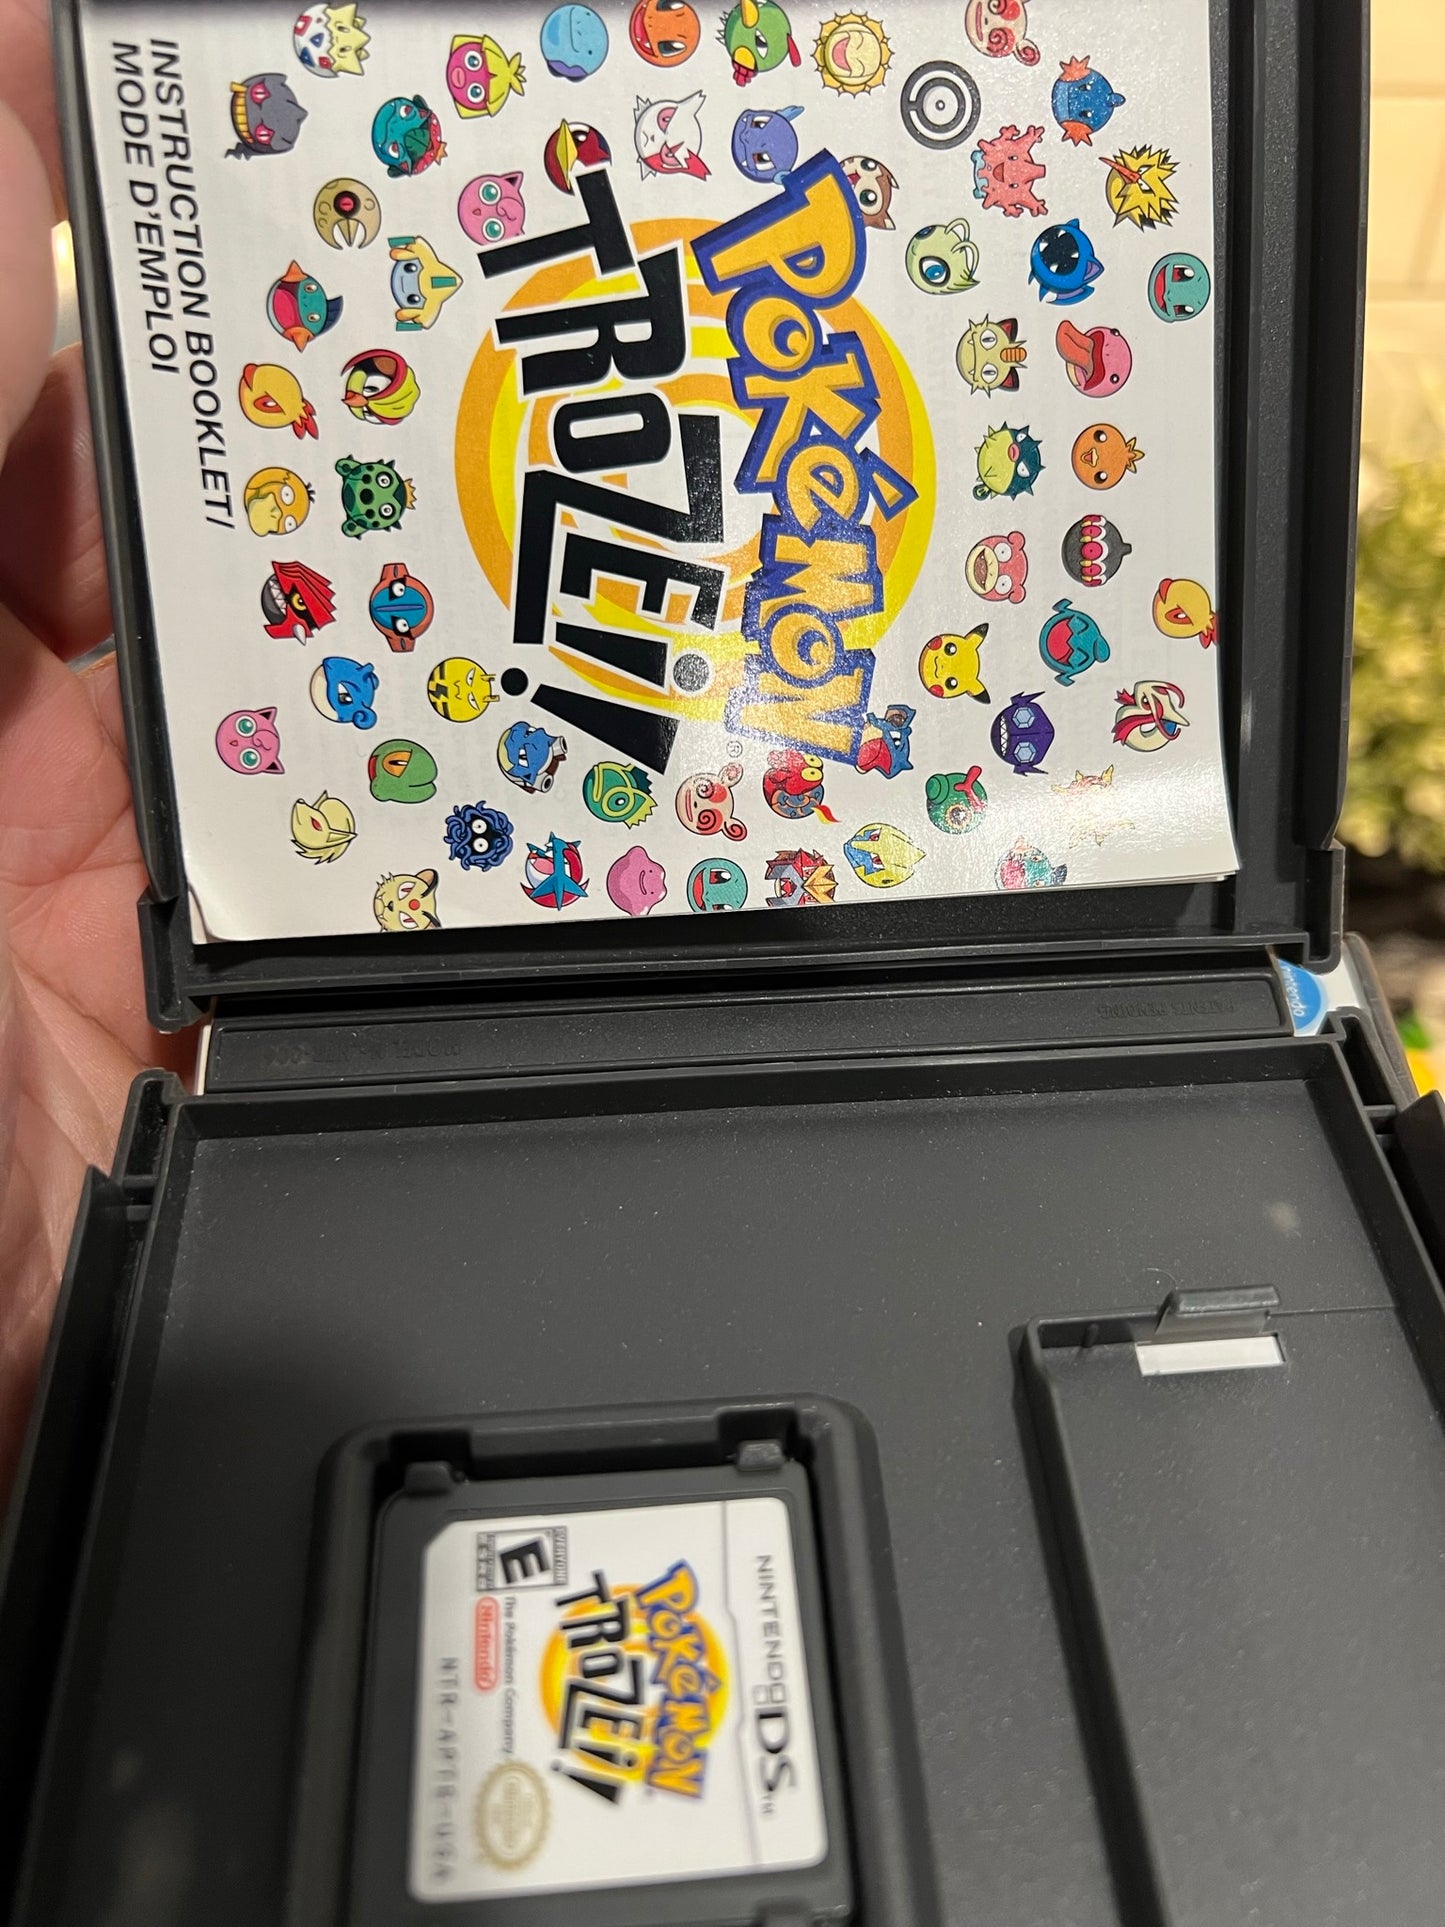 Pokémon Trozei (Nintendo DS, 2006)